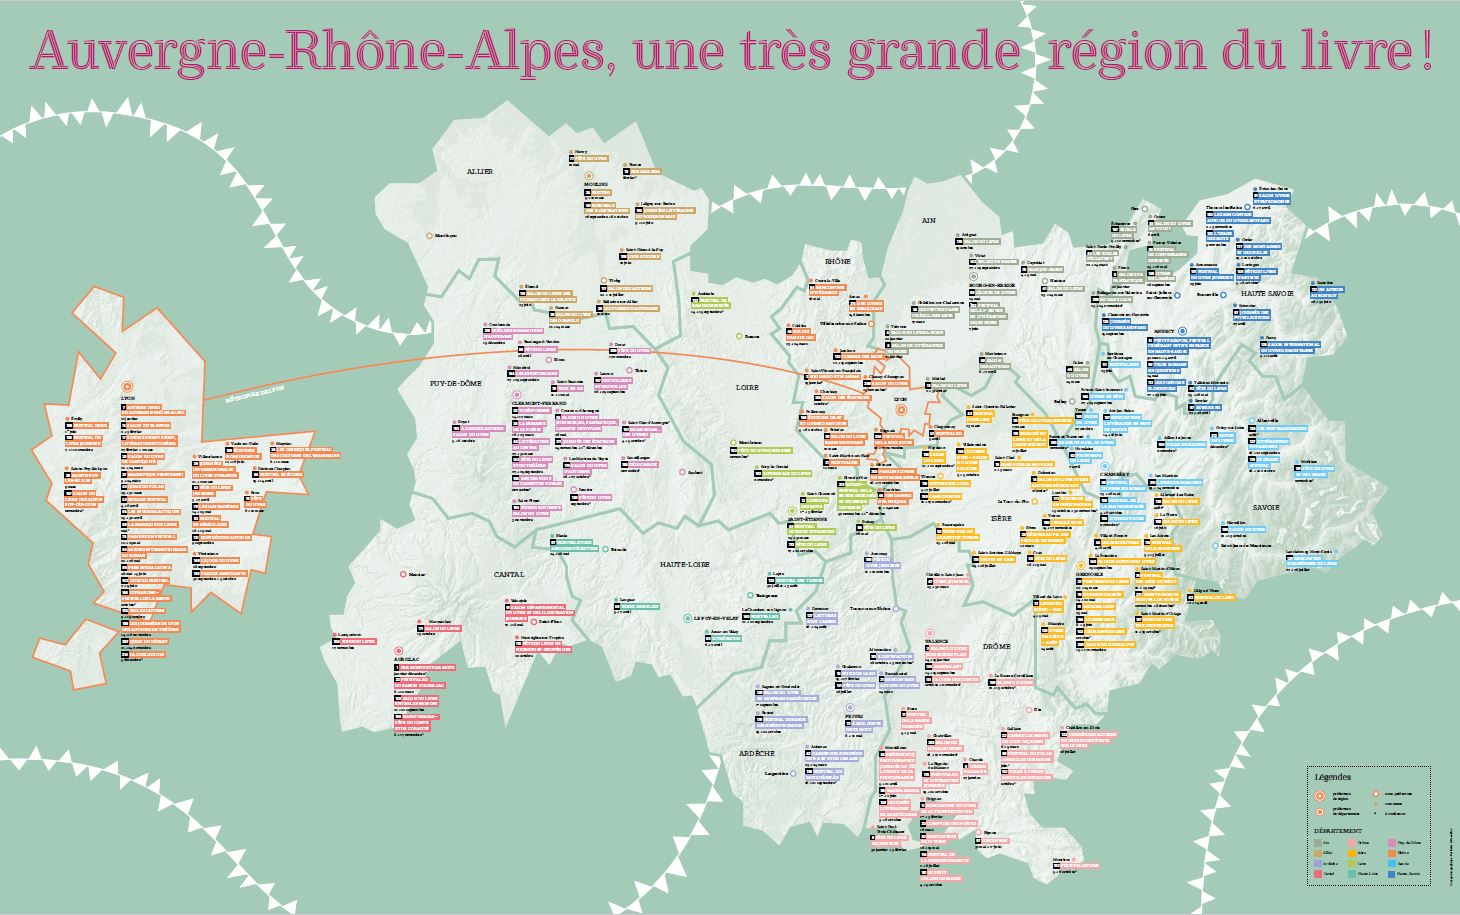 Carte régionale des fêtes et salons du livre 2019 - Auvergne-Rhône-Alpes